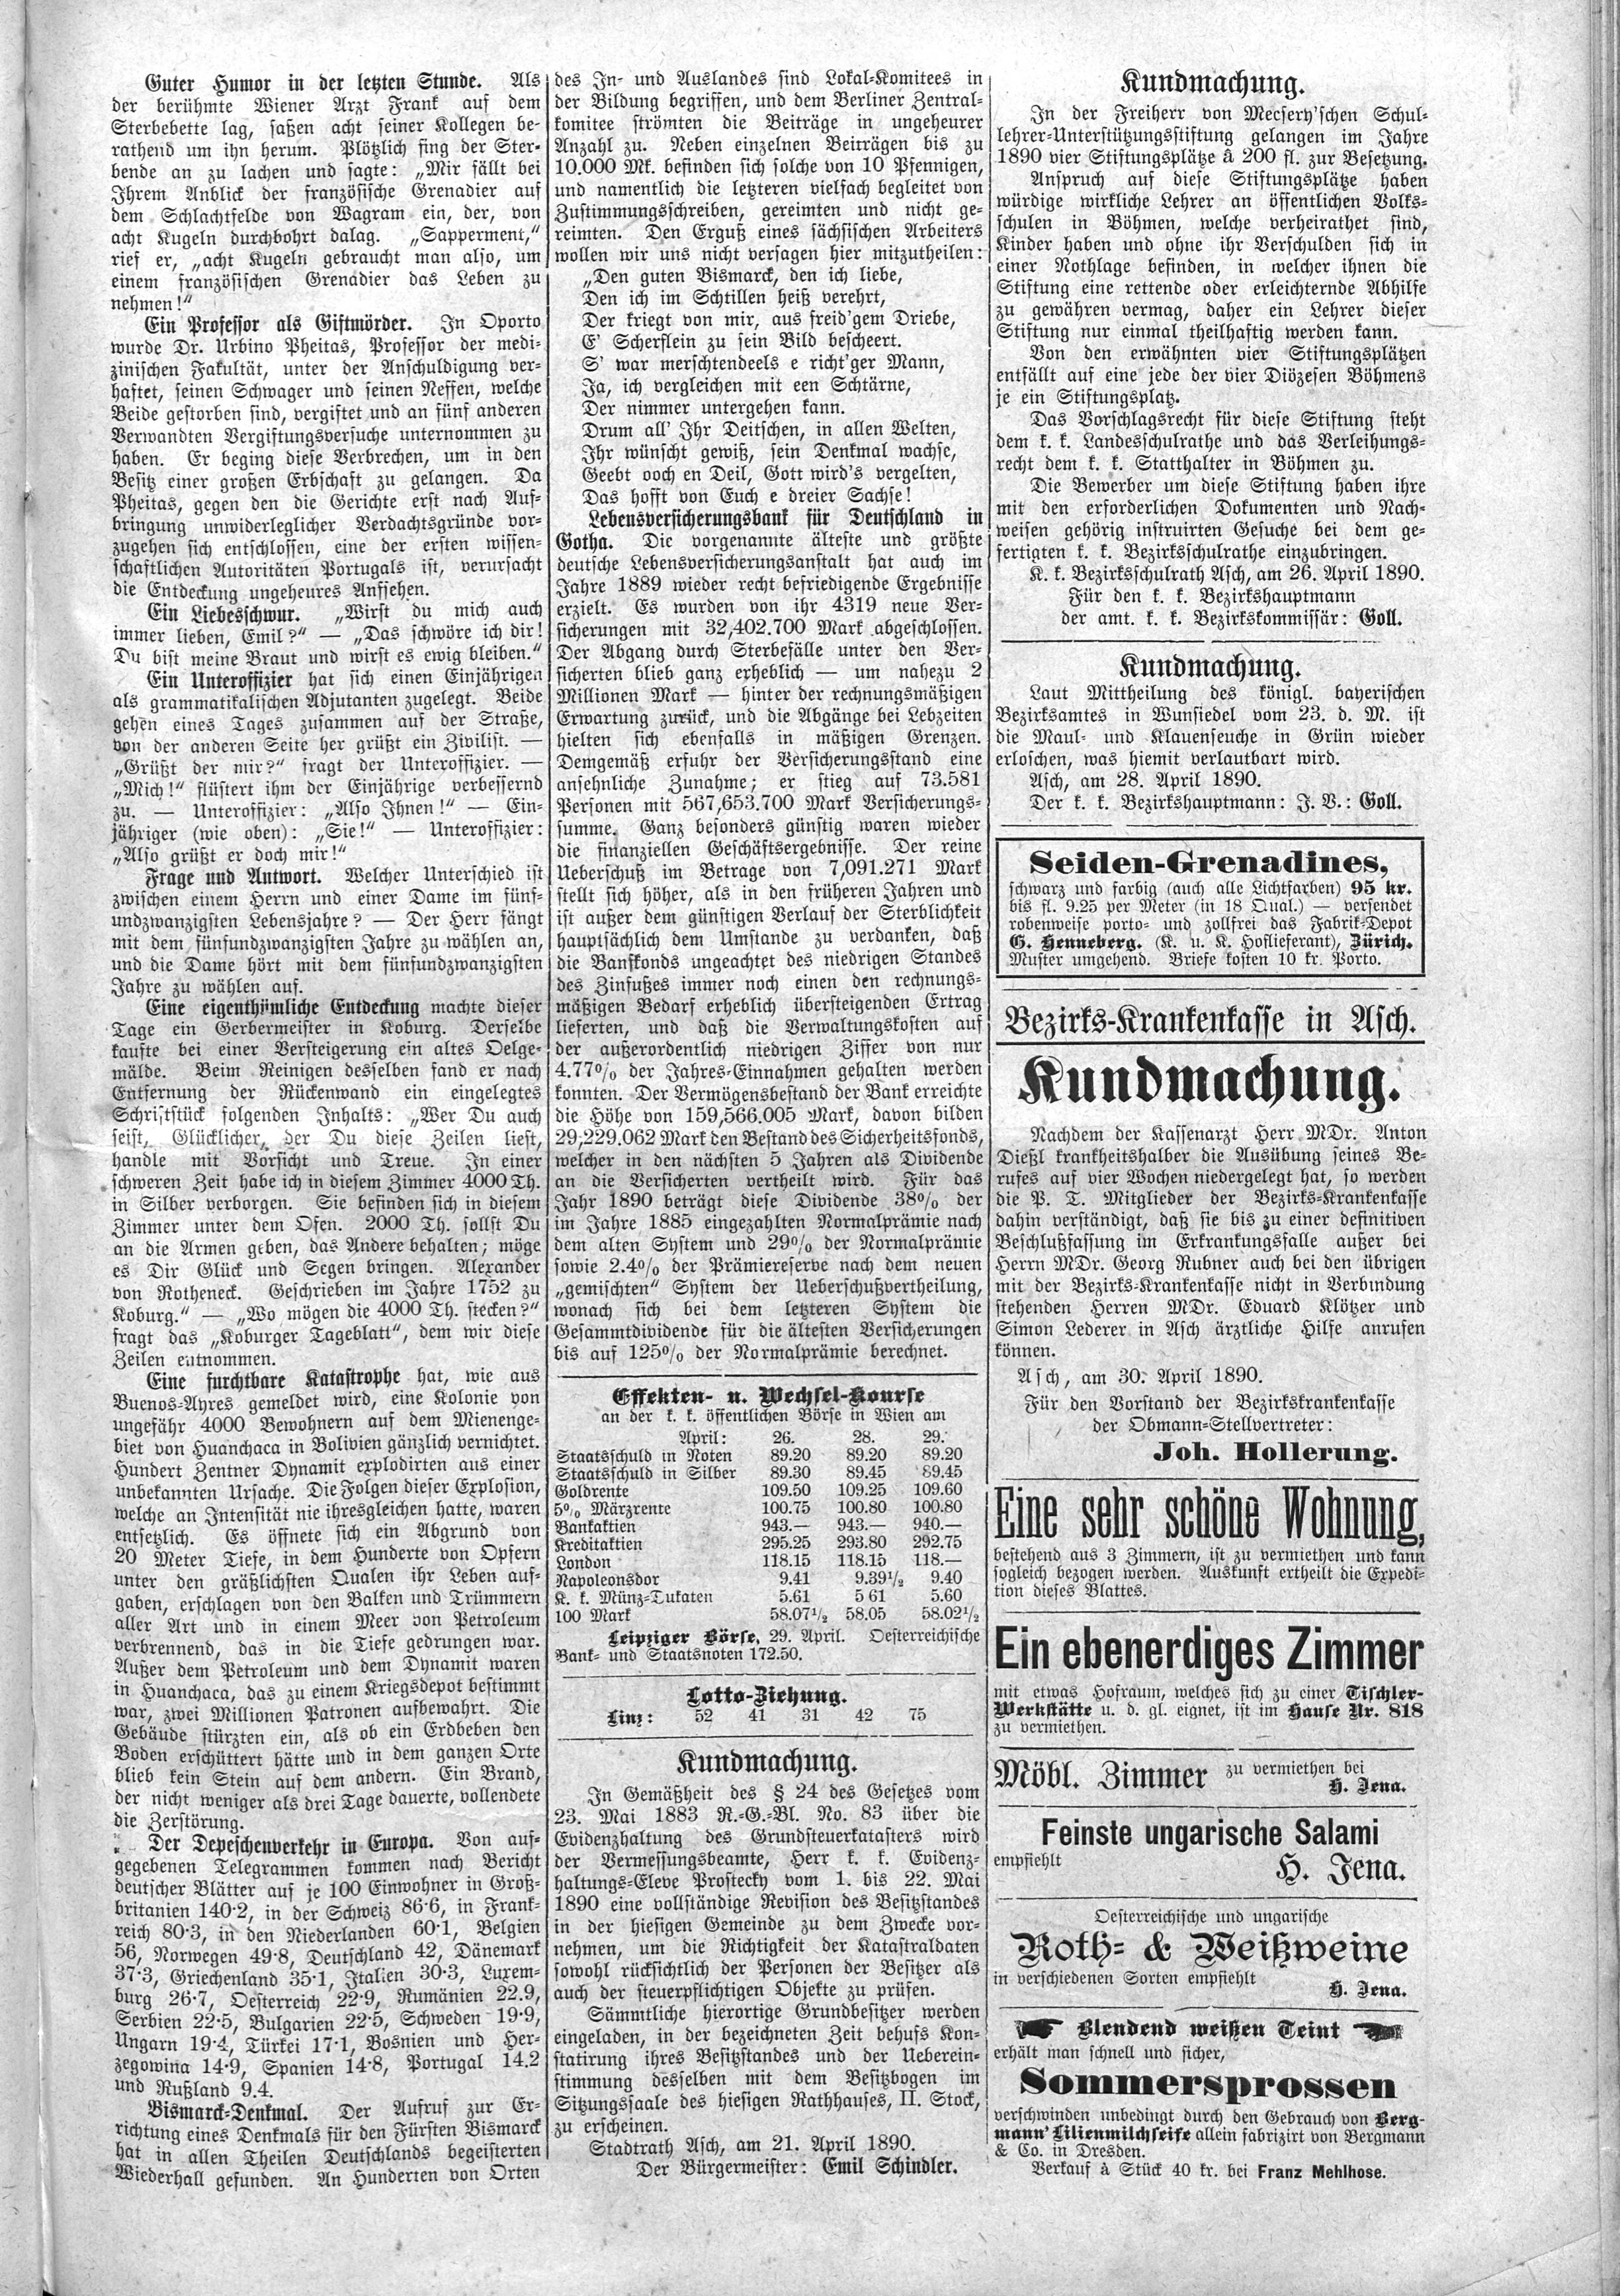 7. soap-ch_knihovna_ascher-zeitung-1890-04-30-n34_1415